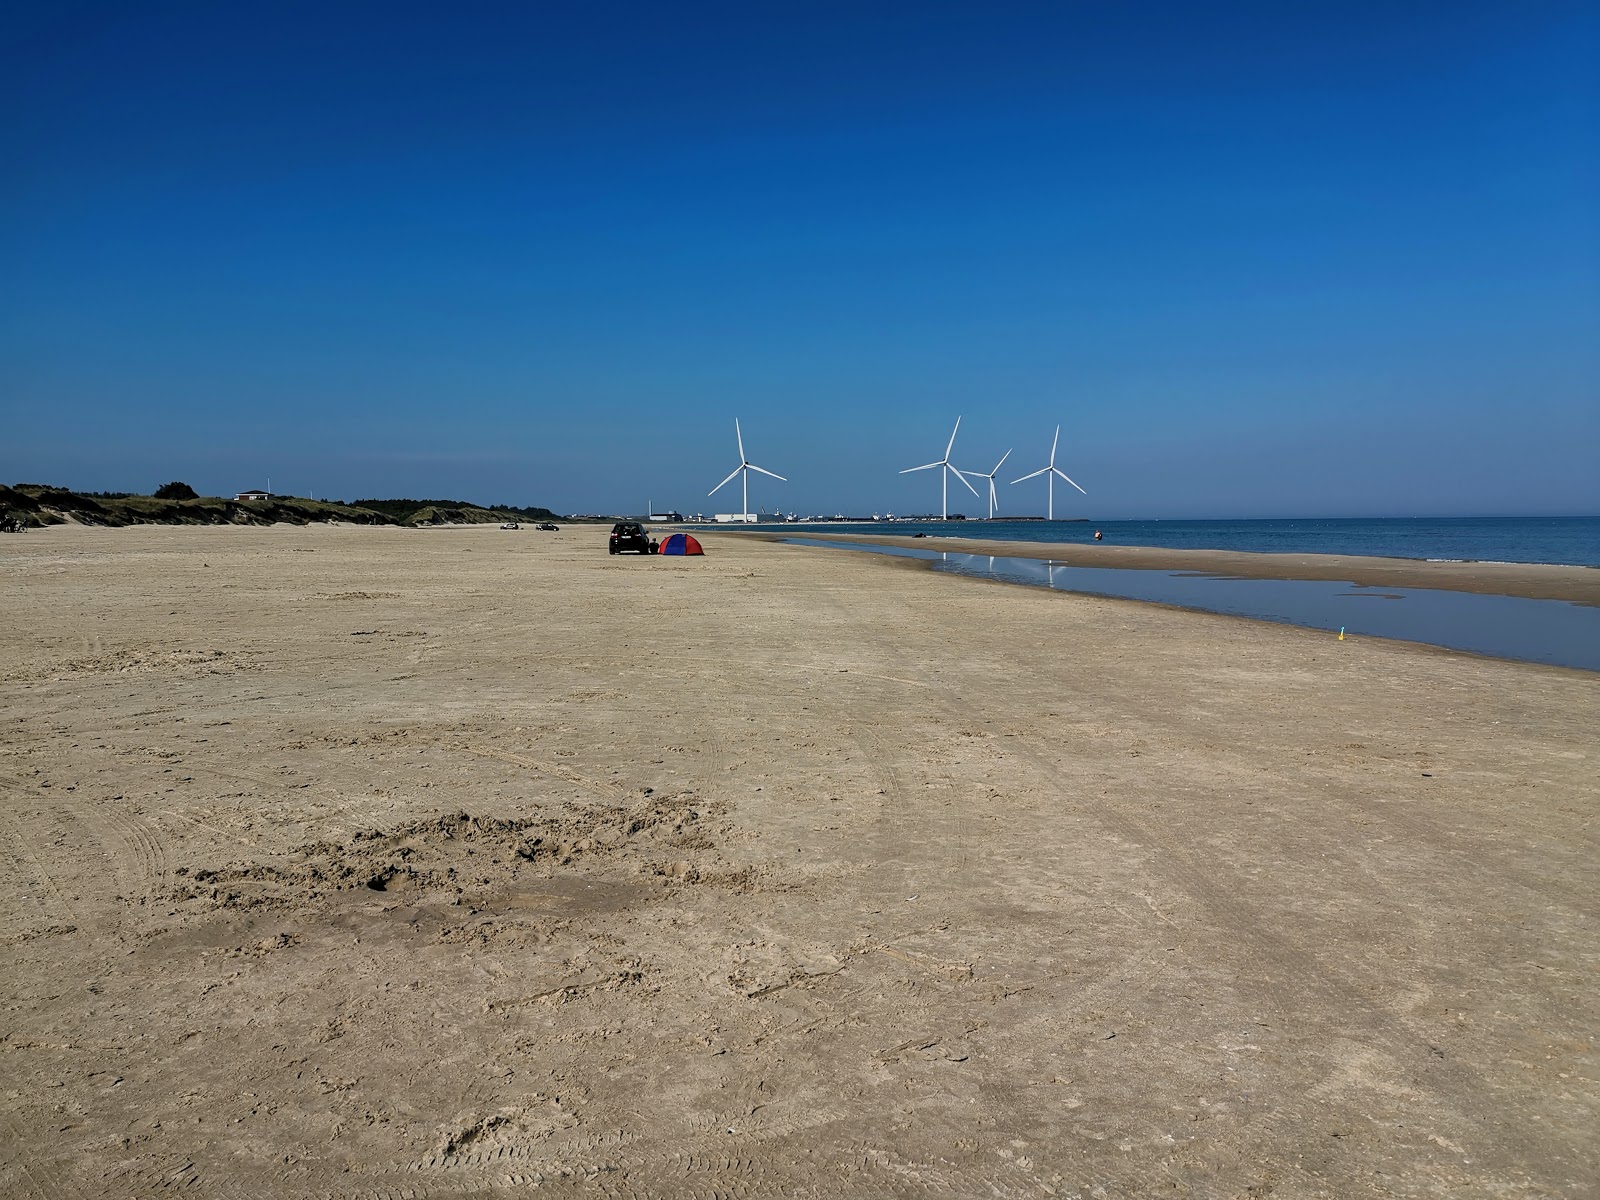 Kjul Beach'in fotoğrafı çok temiz temizlik seviyesi ile